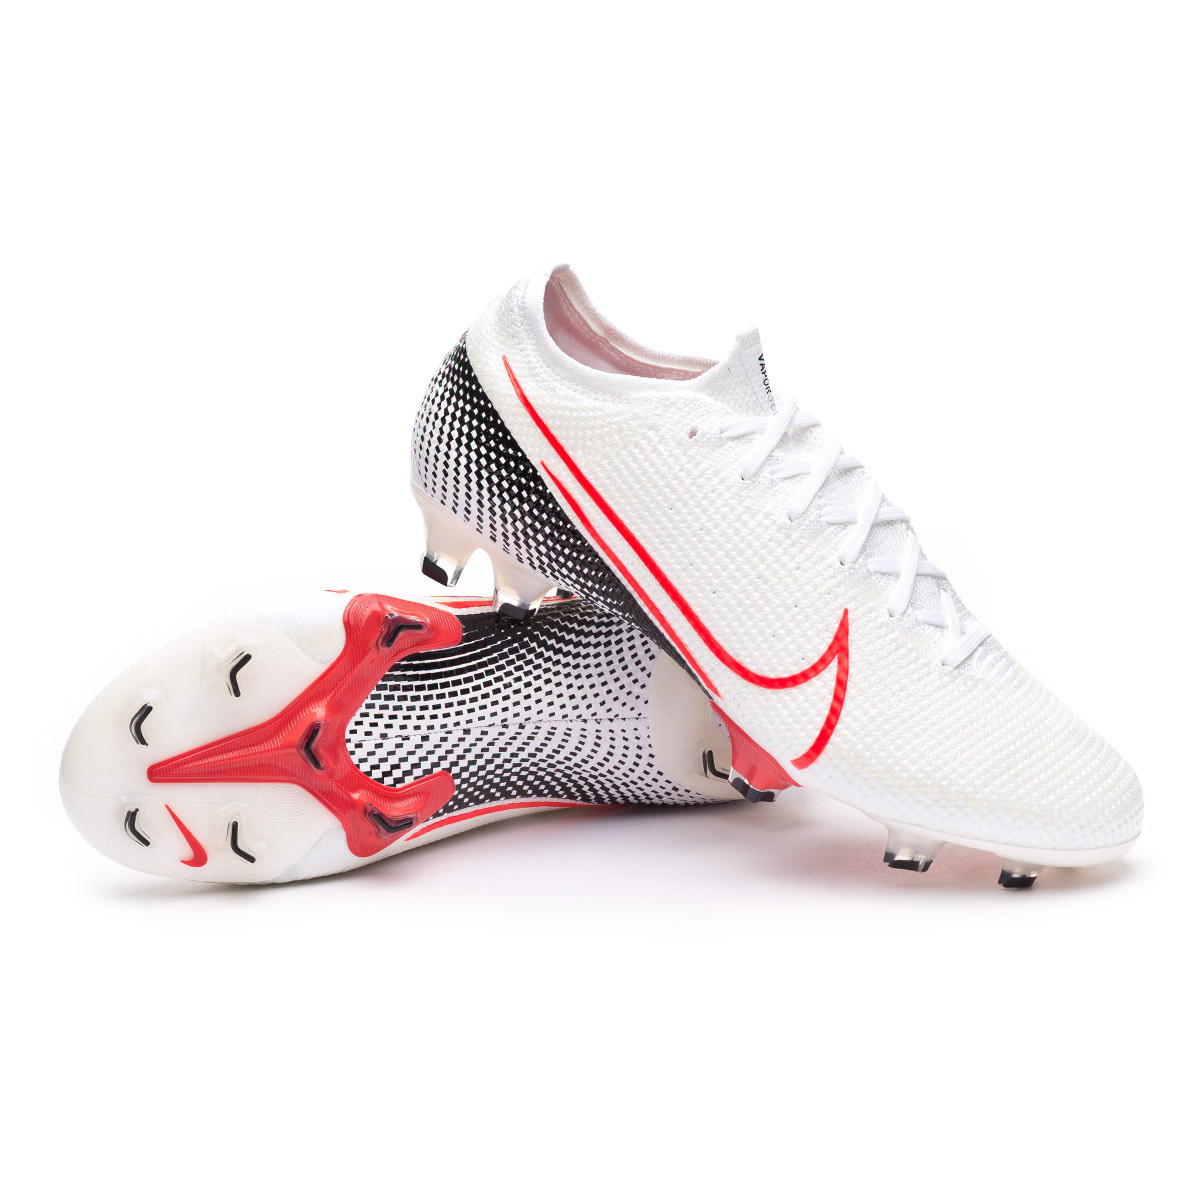 Bota de fútbol Nike Mercurial Vapor XIII Elite FG White-Laser crimson-Black  - Tienda de fútbol Fútbol Emotion